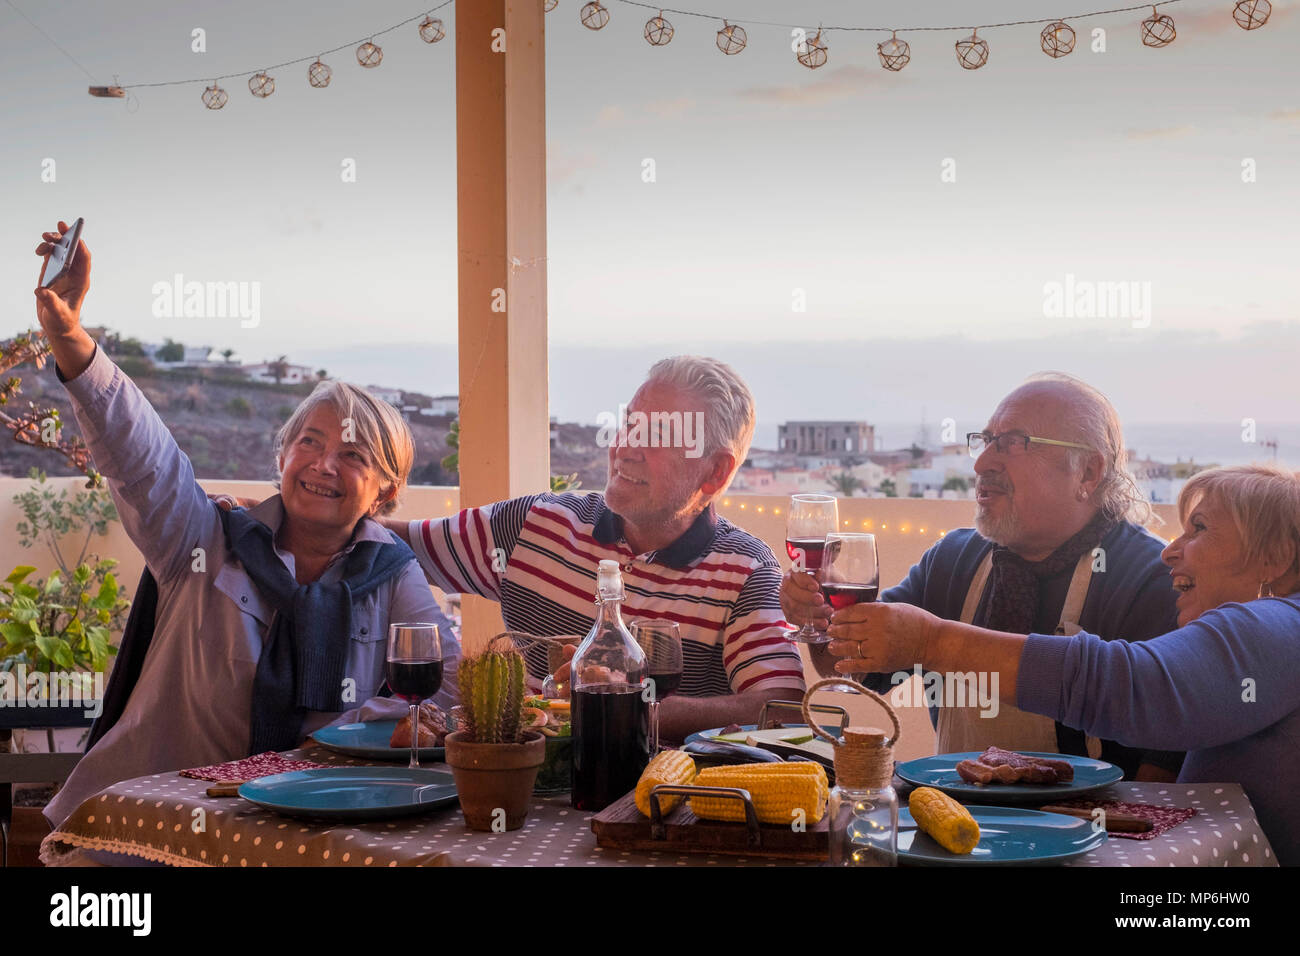 Gruppe der Erwachsenen Freunde ältere Menschen im Ruhestand Spaß ein Bild wie selfie alle zusammen bei einem Abendessen im Freien auf der Terrasse Dachterrasse feiern. Stockfoto